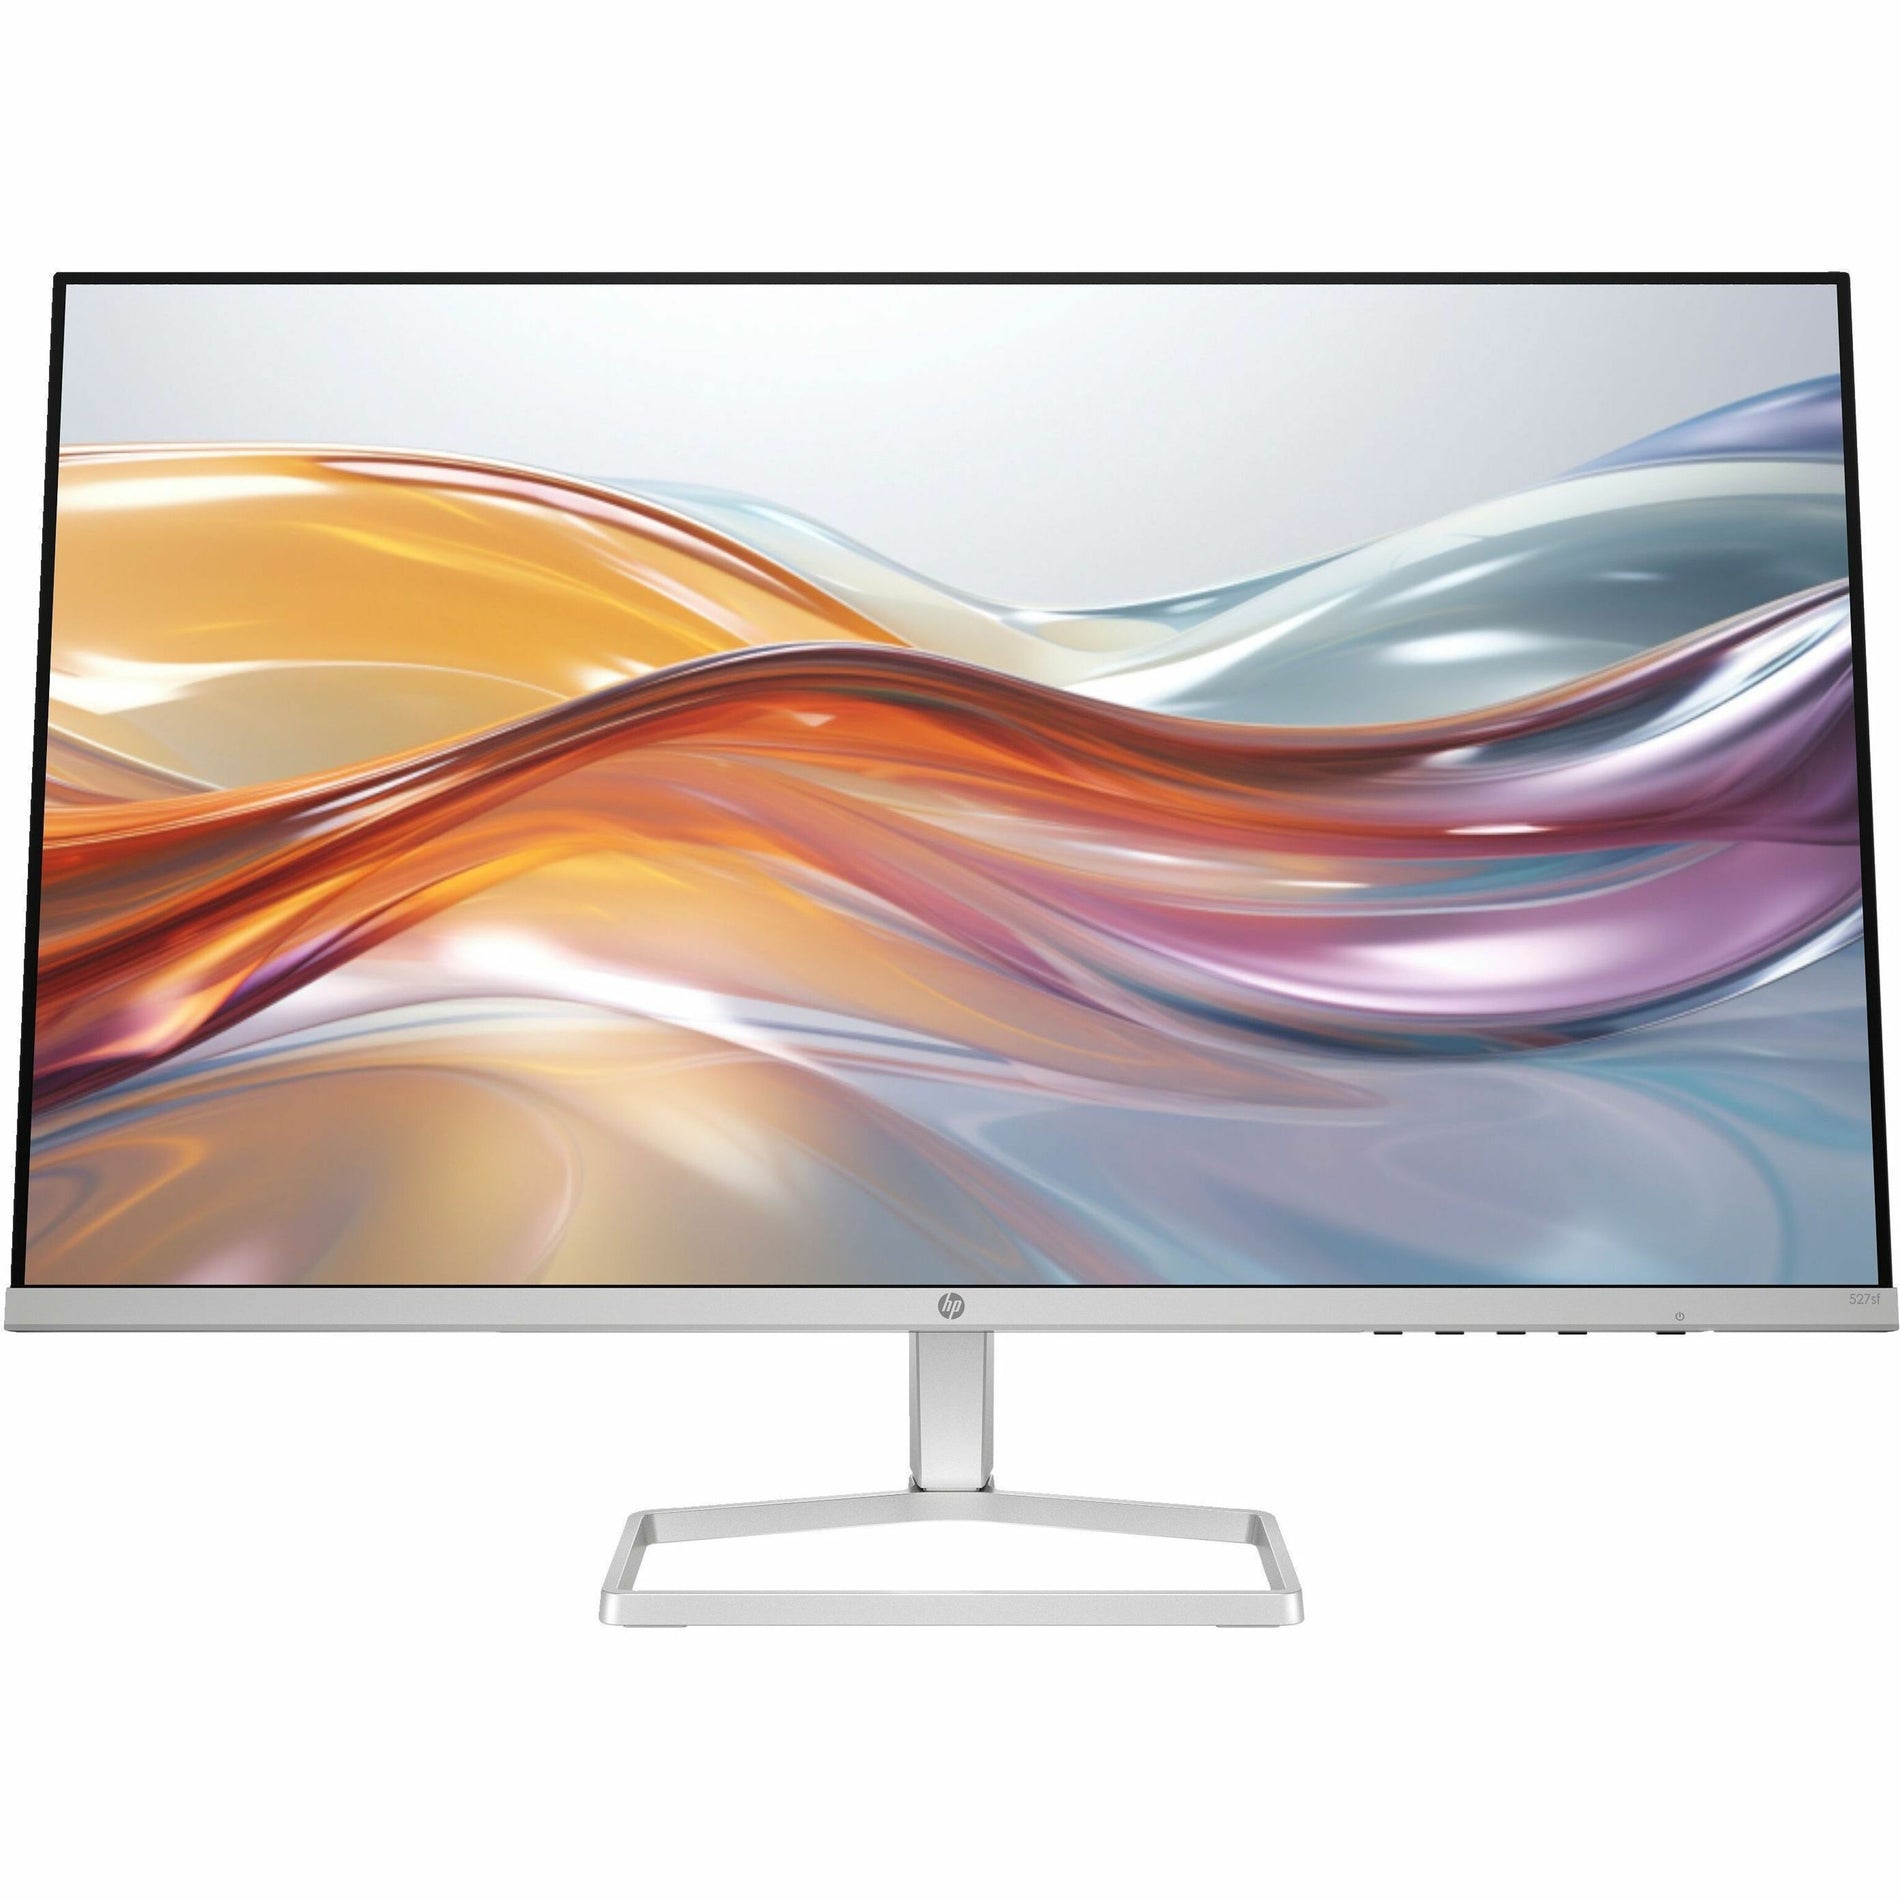 HP 527sf 27" Class Full HD LCD Monitor - 16:9 (94F44AA#ABA)